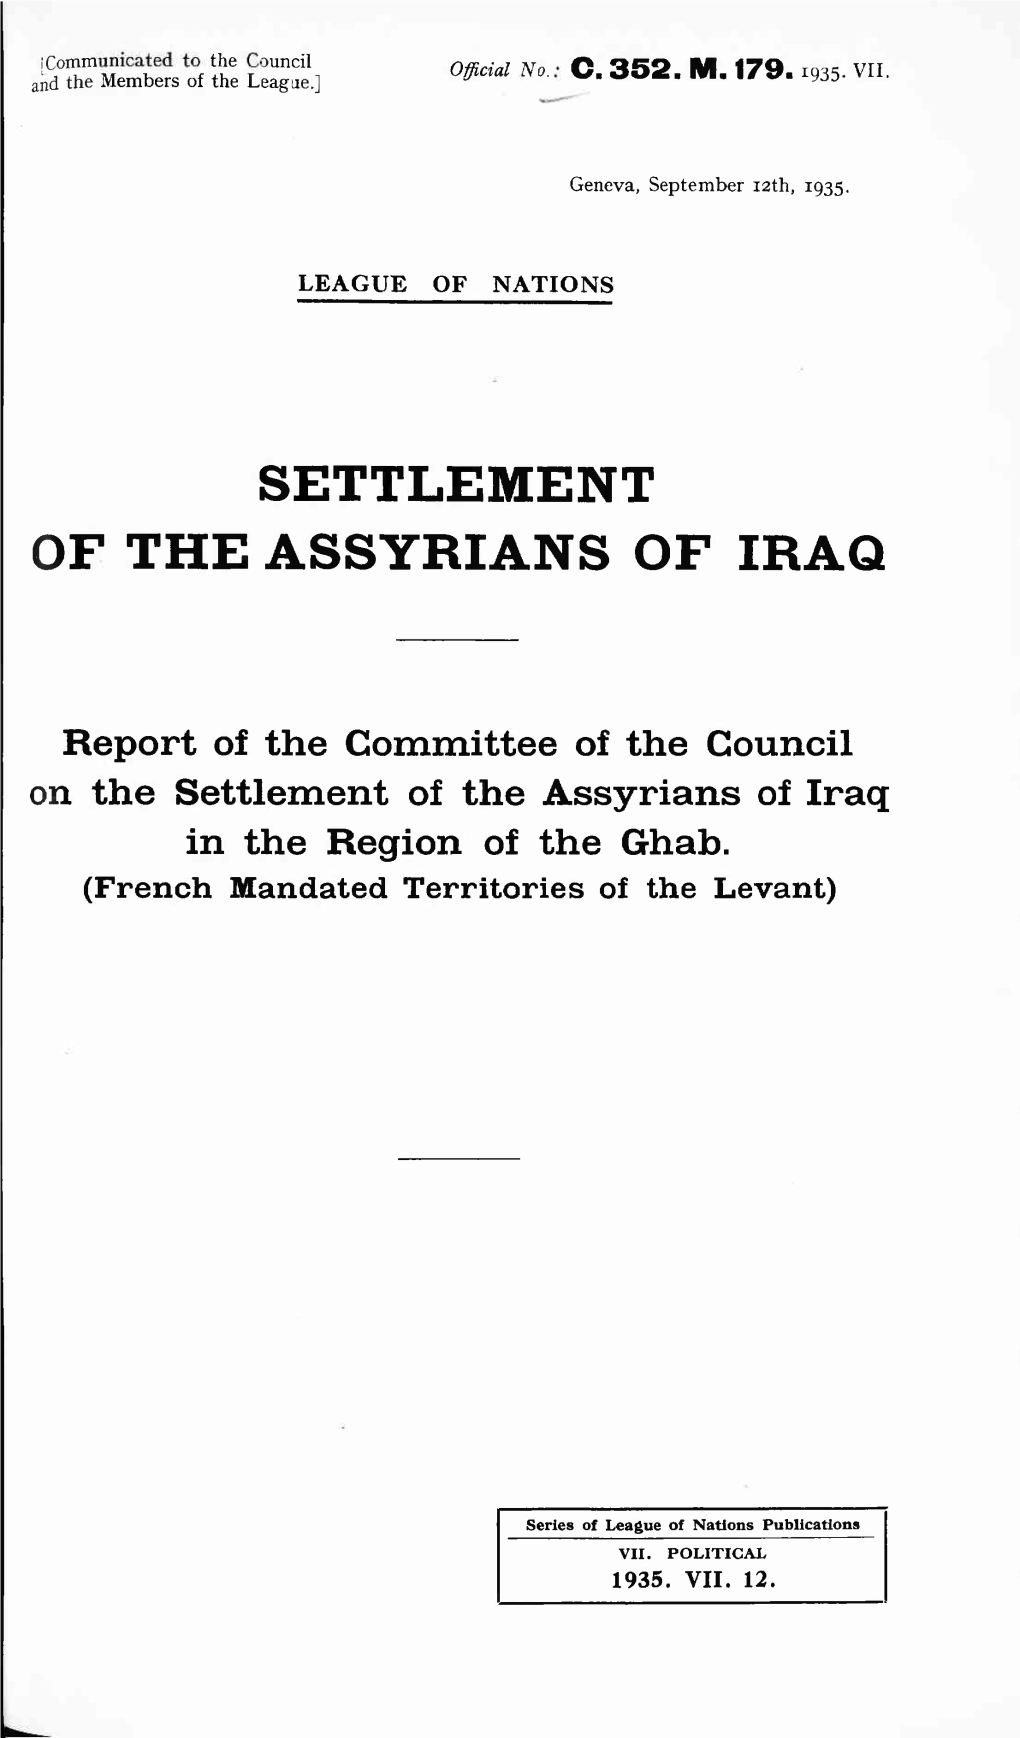 Settlement of the Assyrians of Iraq